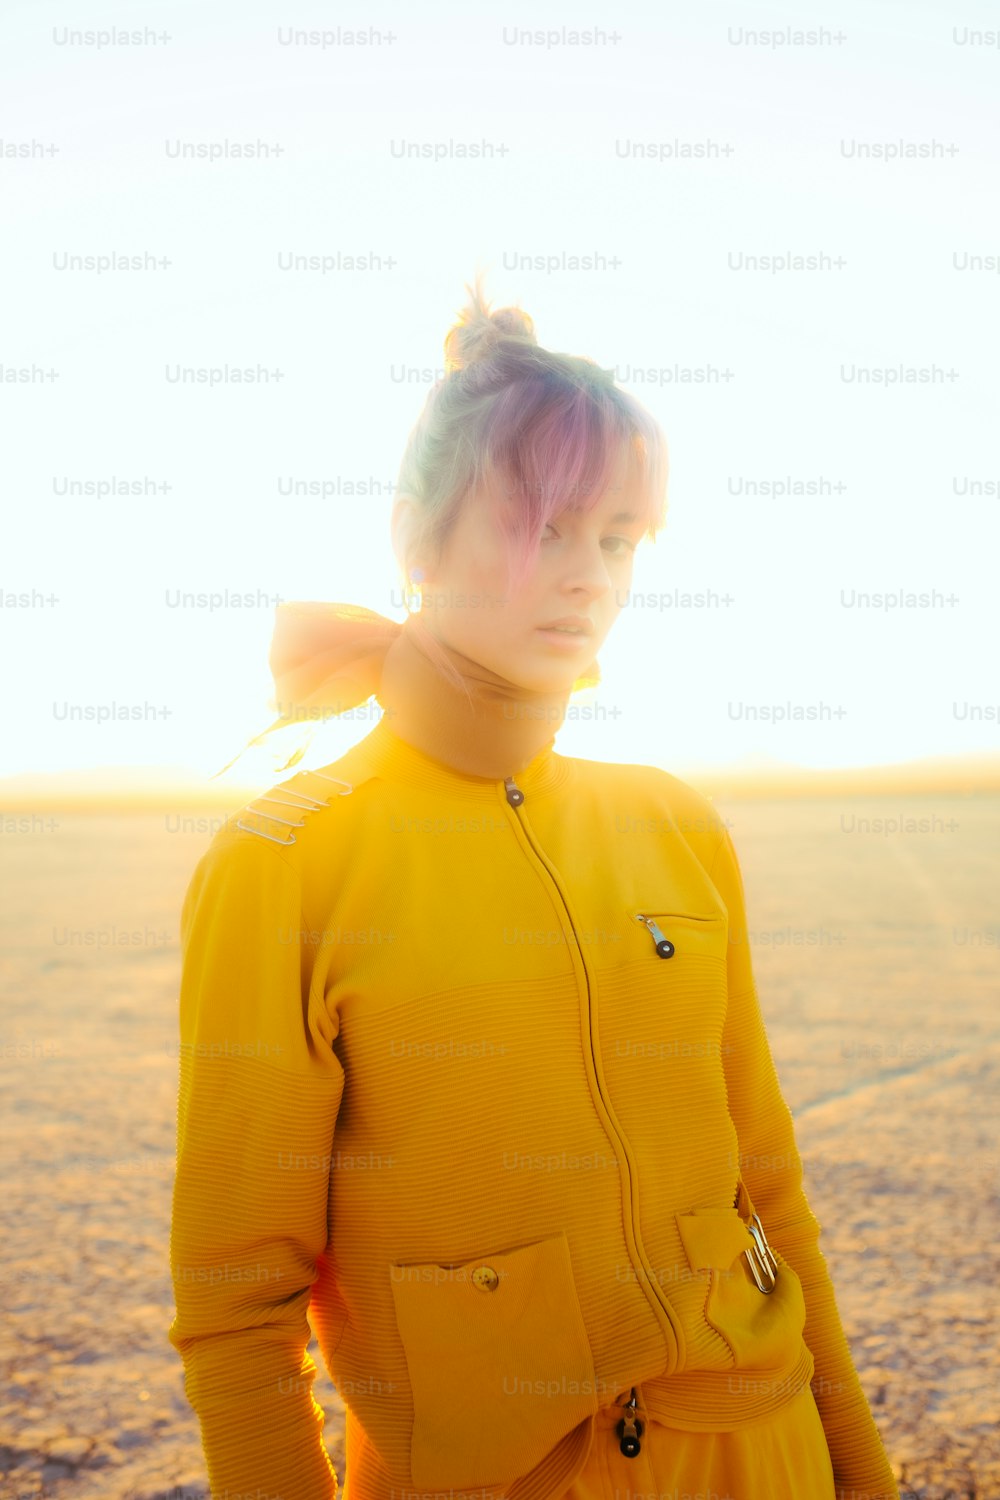 Una mujer con un traje amarillo parada en el desierto